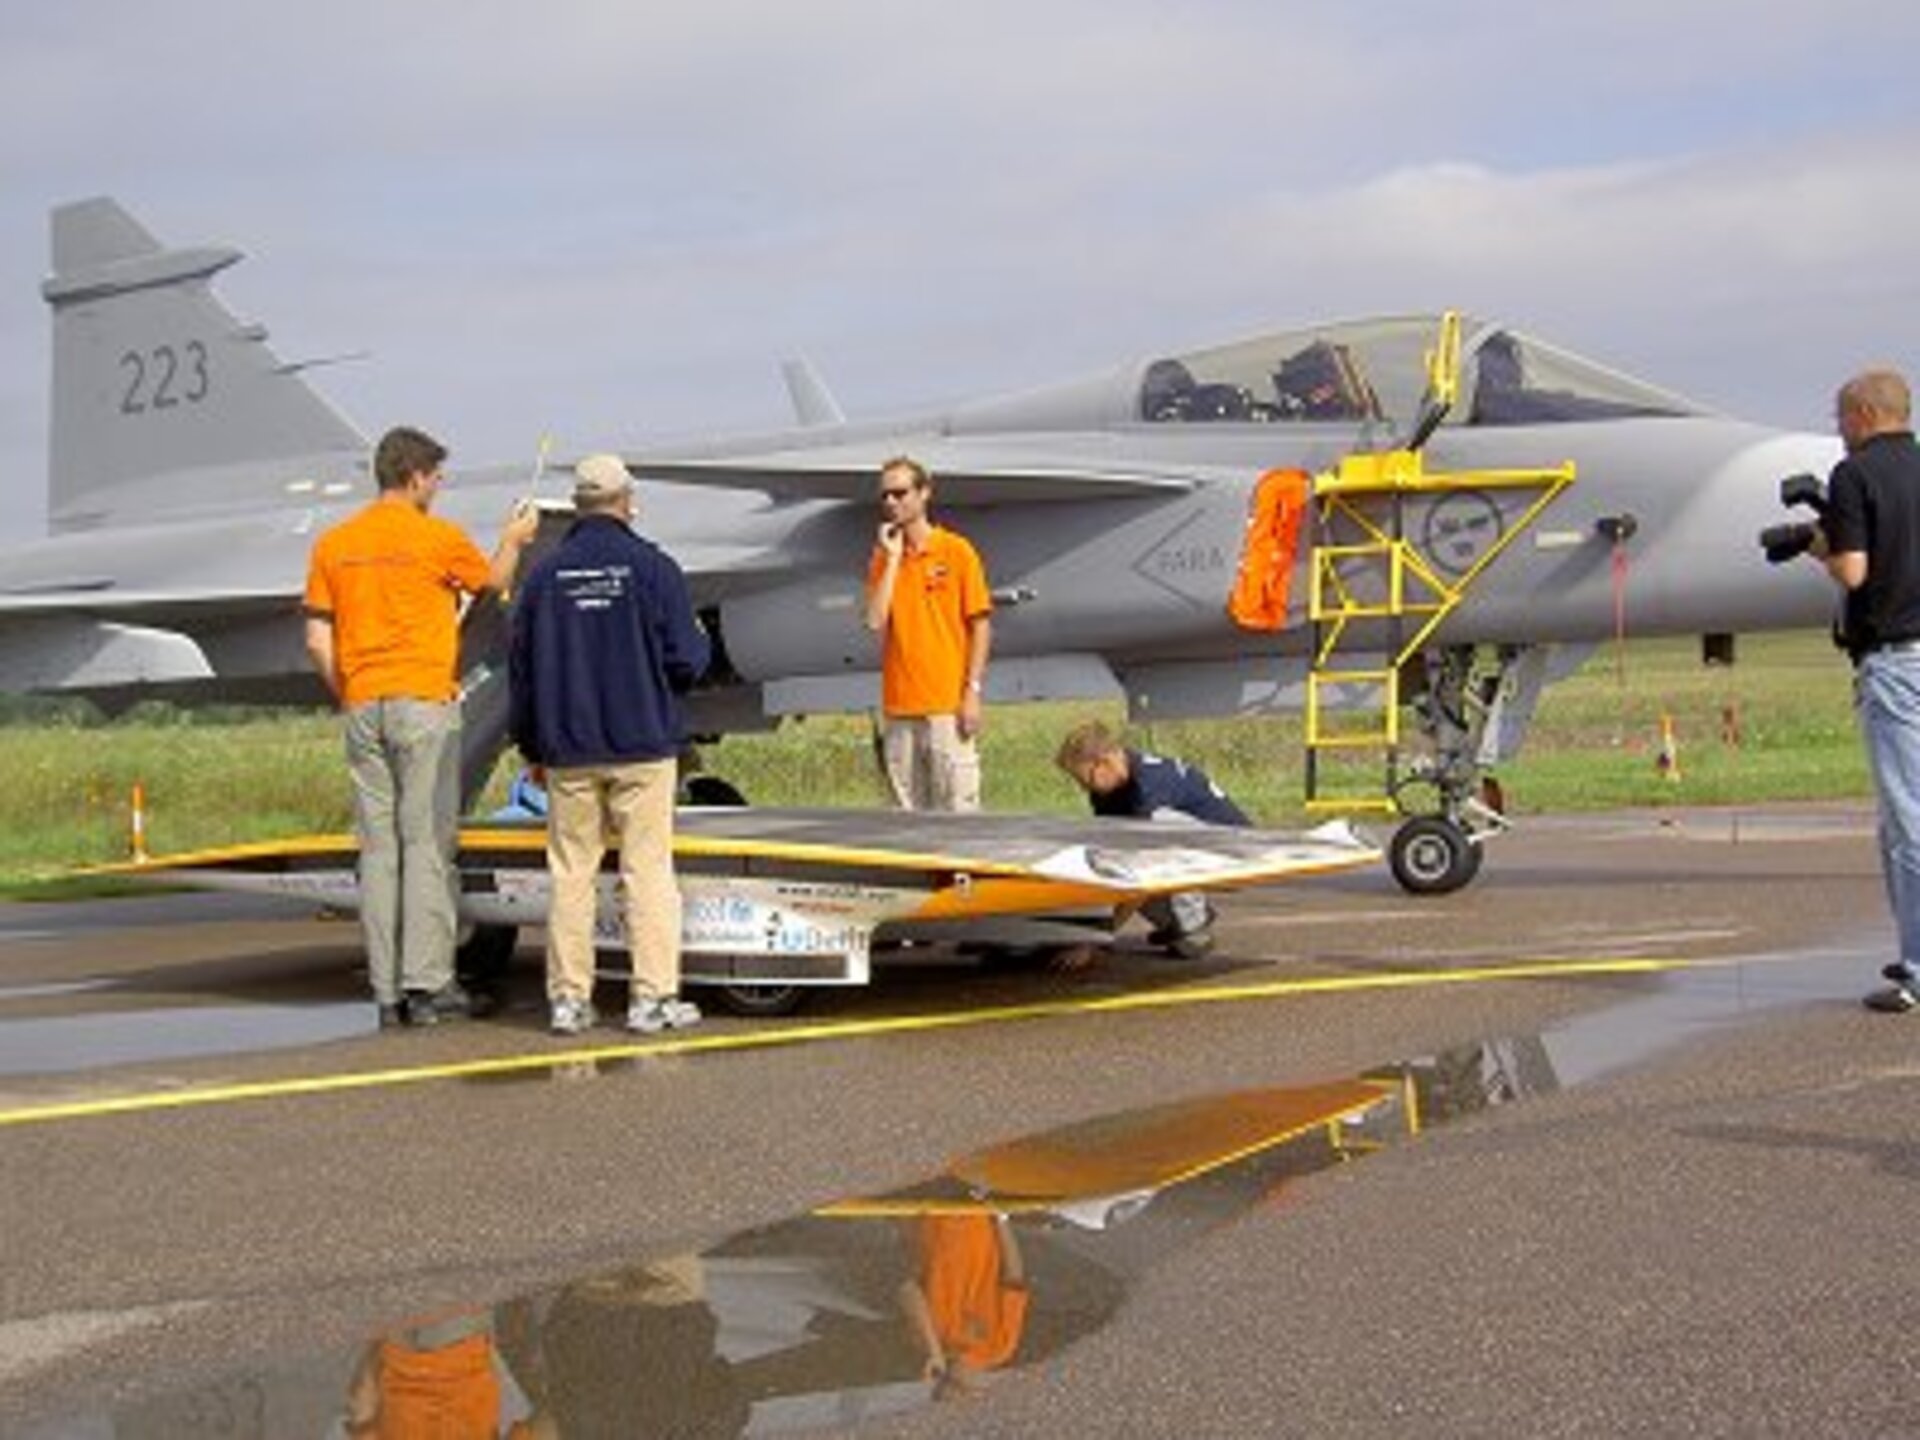 Nuna II next to a Gripen aircraft